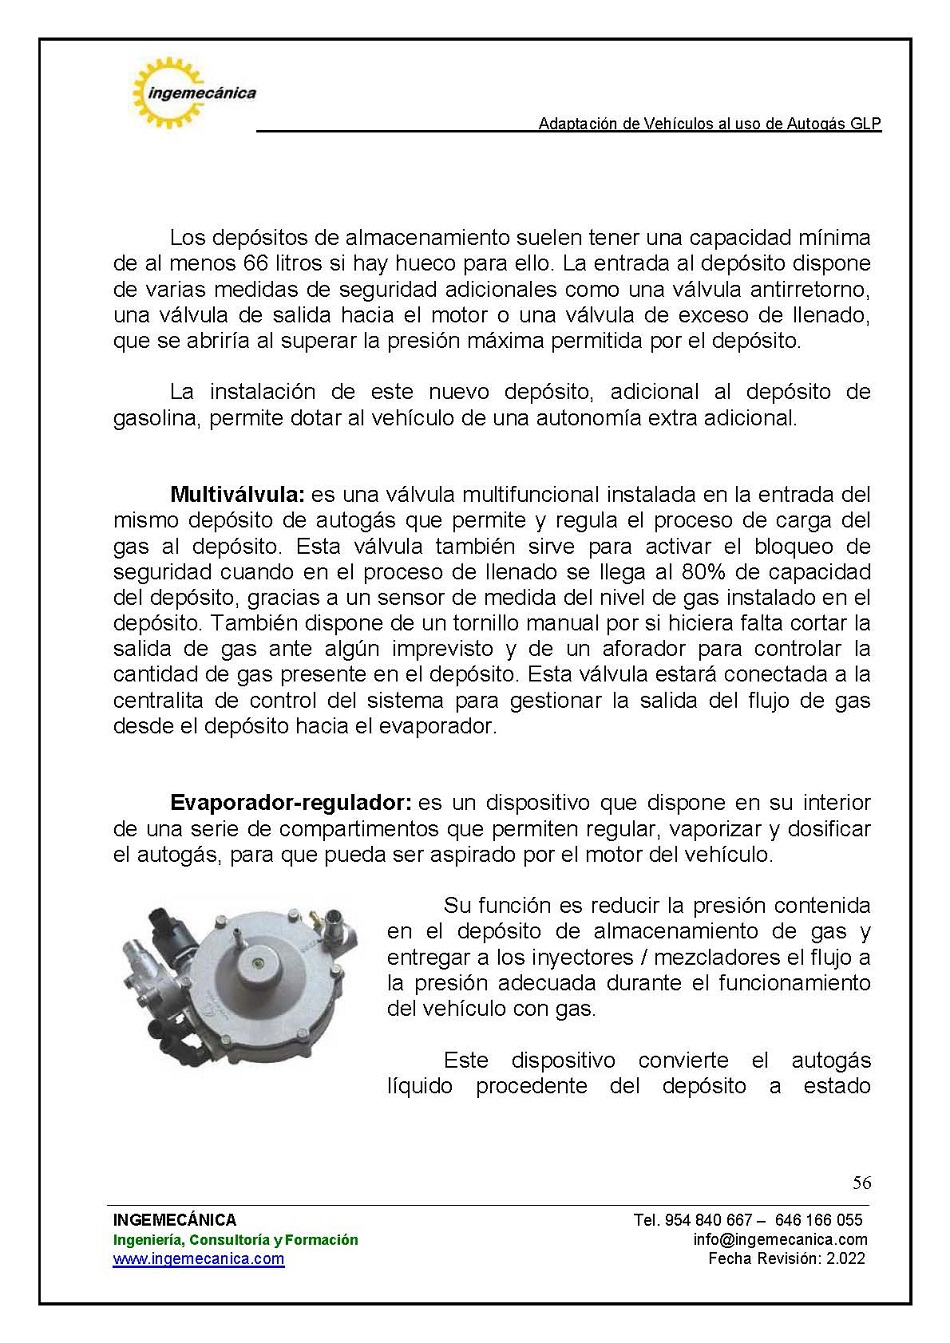 Curso para la Adaptación de Vehículos al uso de Autogás GLP. Página 56